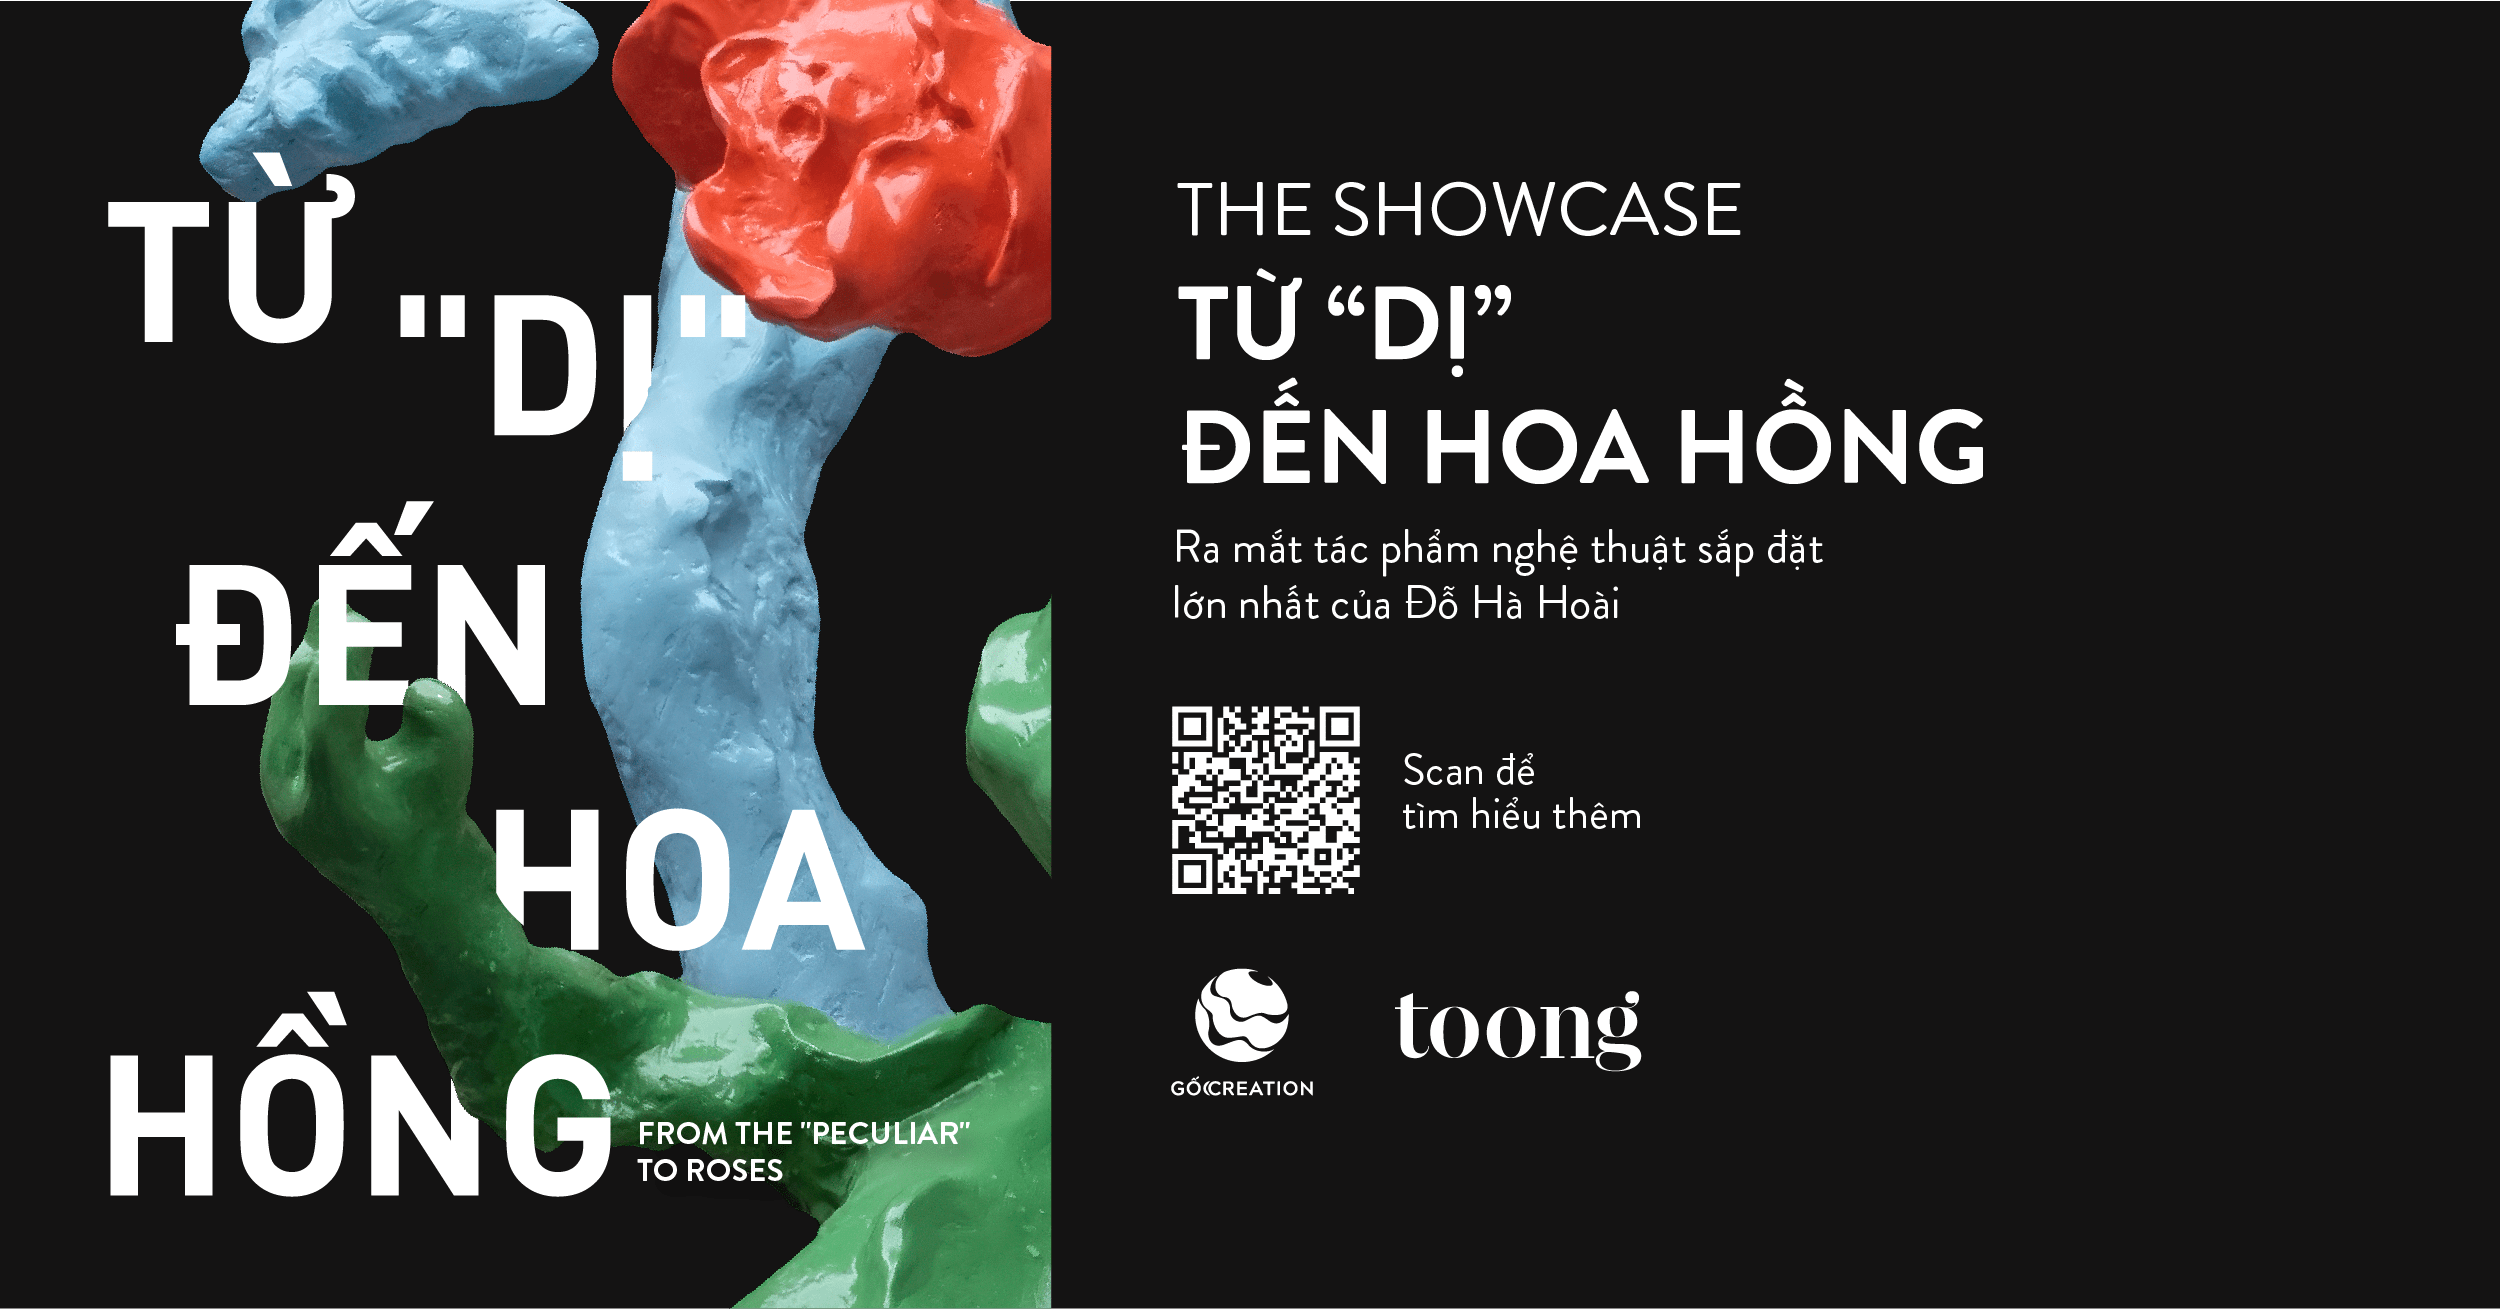 Ngày 15/11/2023, the Showcase TỪ “DỊ” TỚI HOA HỒNG sẽ mở màn cho một chuỗi workshop, art talk được diễn ra tại Toong 51 Phan Bội Châu (Hà Nội); đánh dấu sự kiện vận hành chính thức của “ngôi nhà chung” thứ 17 của Toong trên khắp ba miền Việt Nam và Viêng Chăn (Lào).